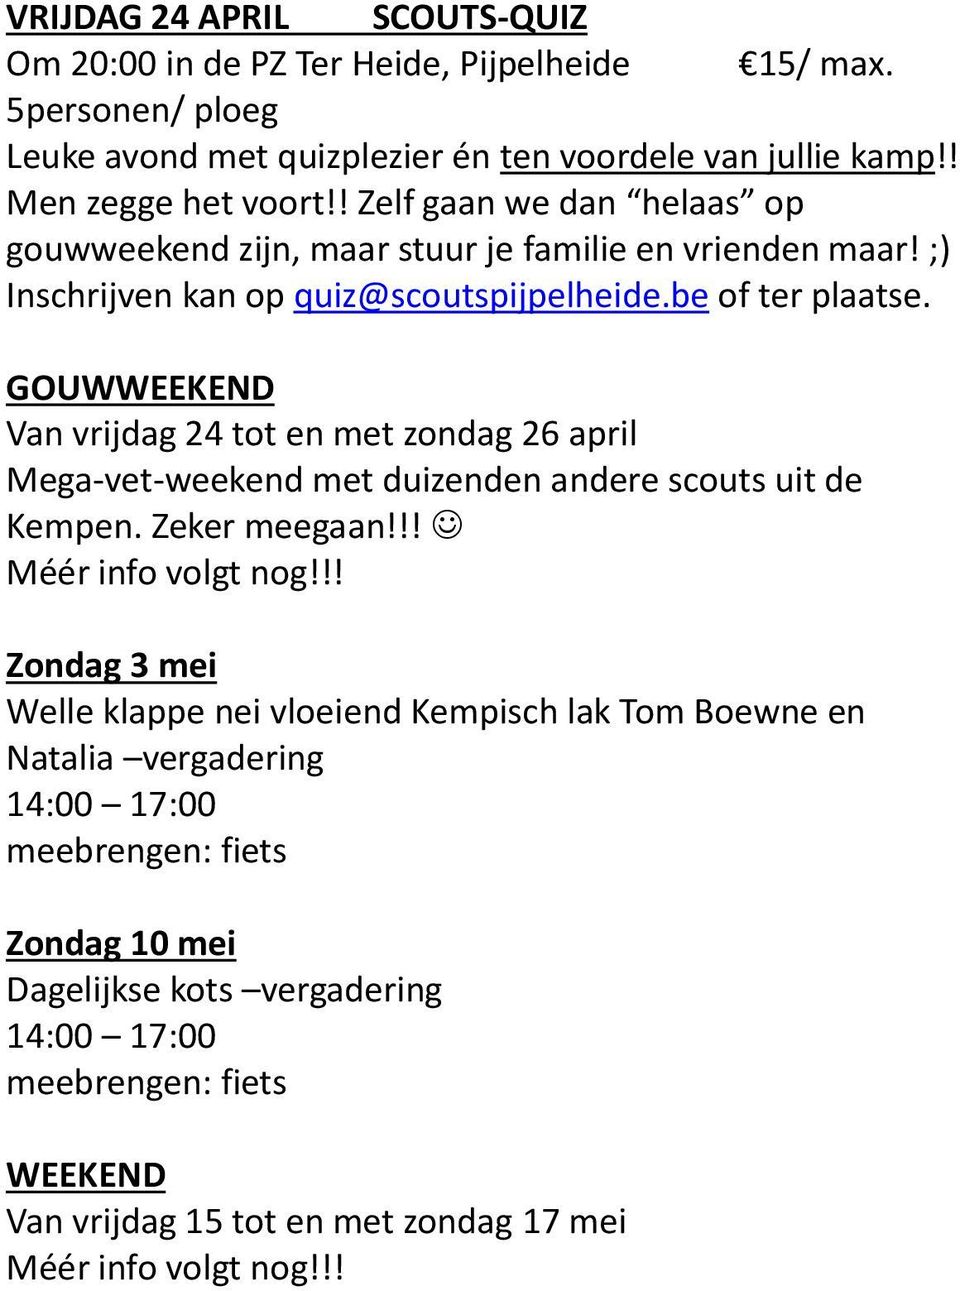 GOUWWEEKEND Van vrijdag 24 tot en met zondag 26 april Mega-vet-weekend met duizenden andere scouts uit de Kempen. Zeker meegaan!!! Méér info volgt nog!